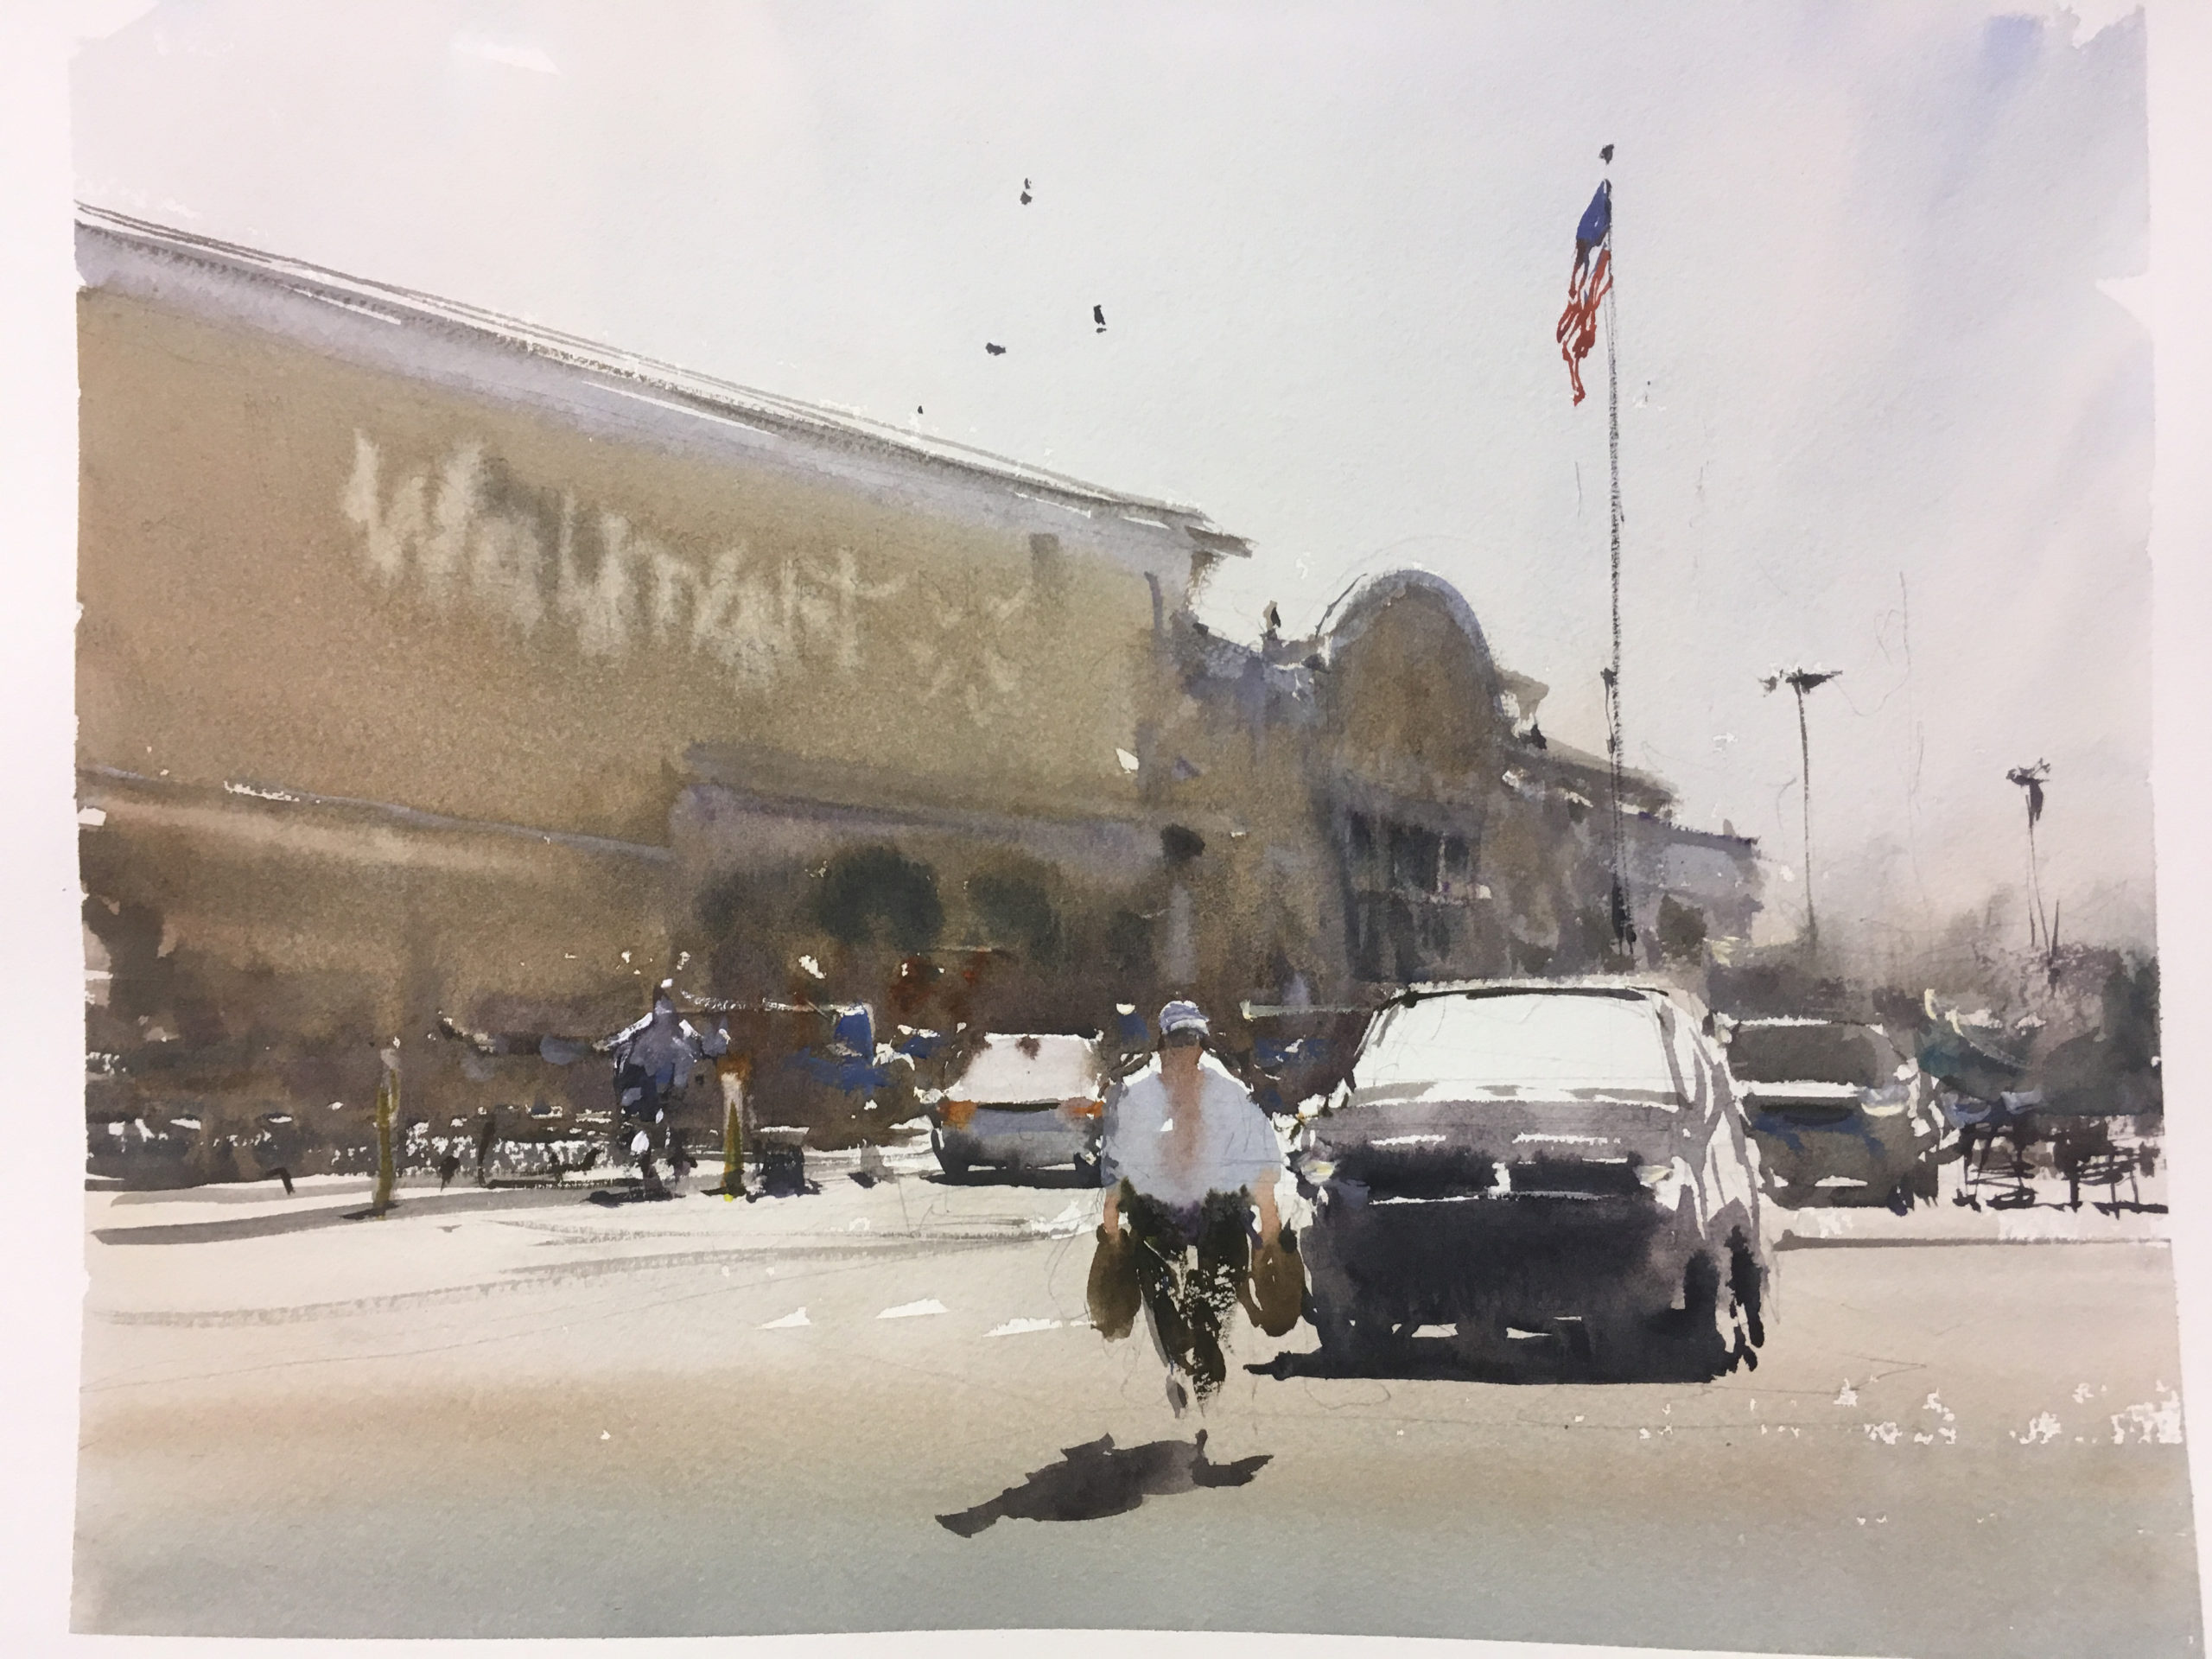 Joseph Zbukvic, "Walmart Car Park in Dallas," 2016, watercolor, 9 3/4 x 13 3/4 in., private collection, plein air 